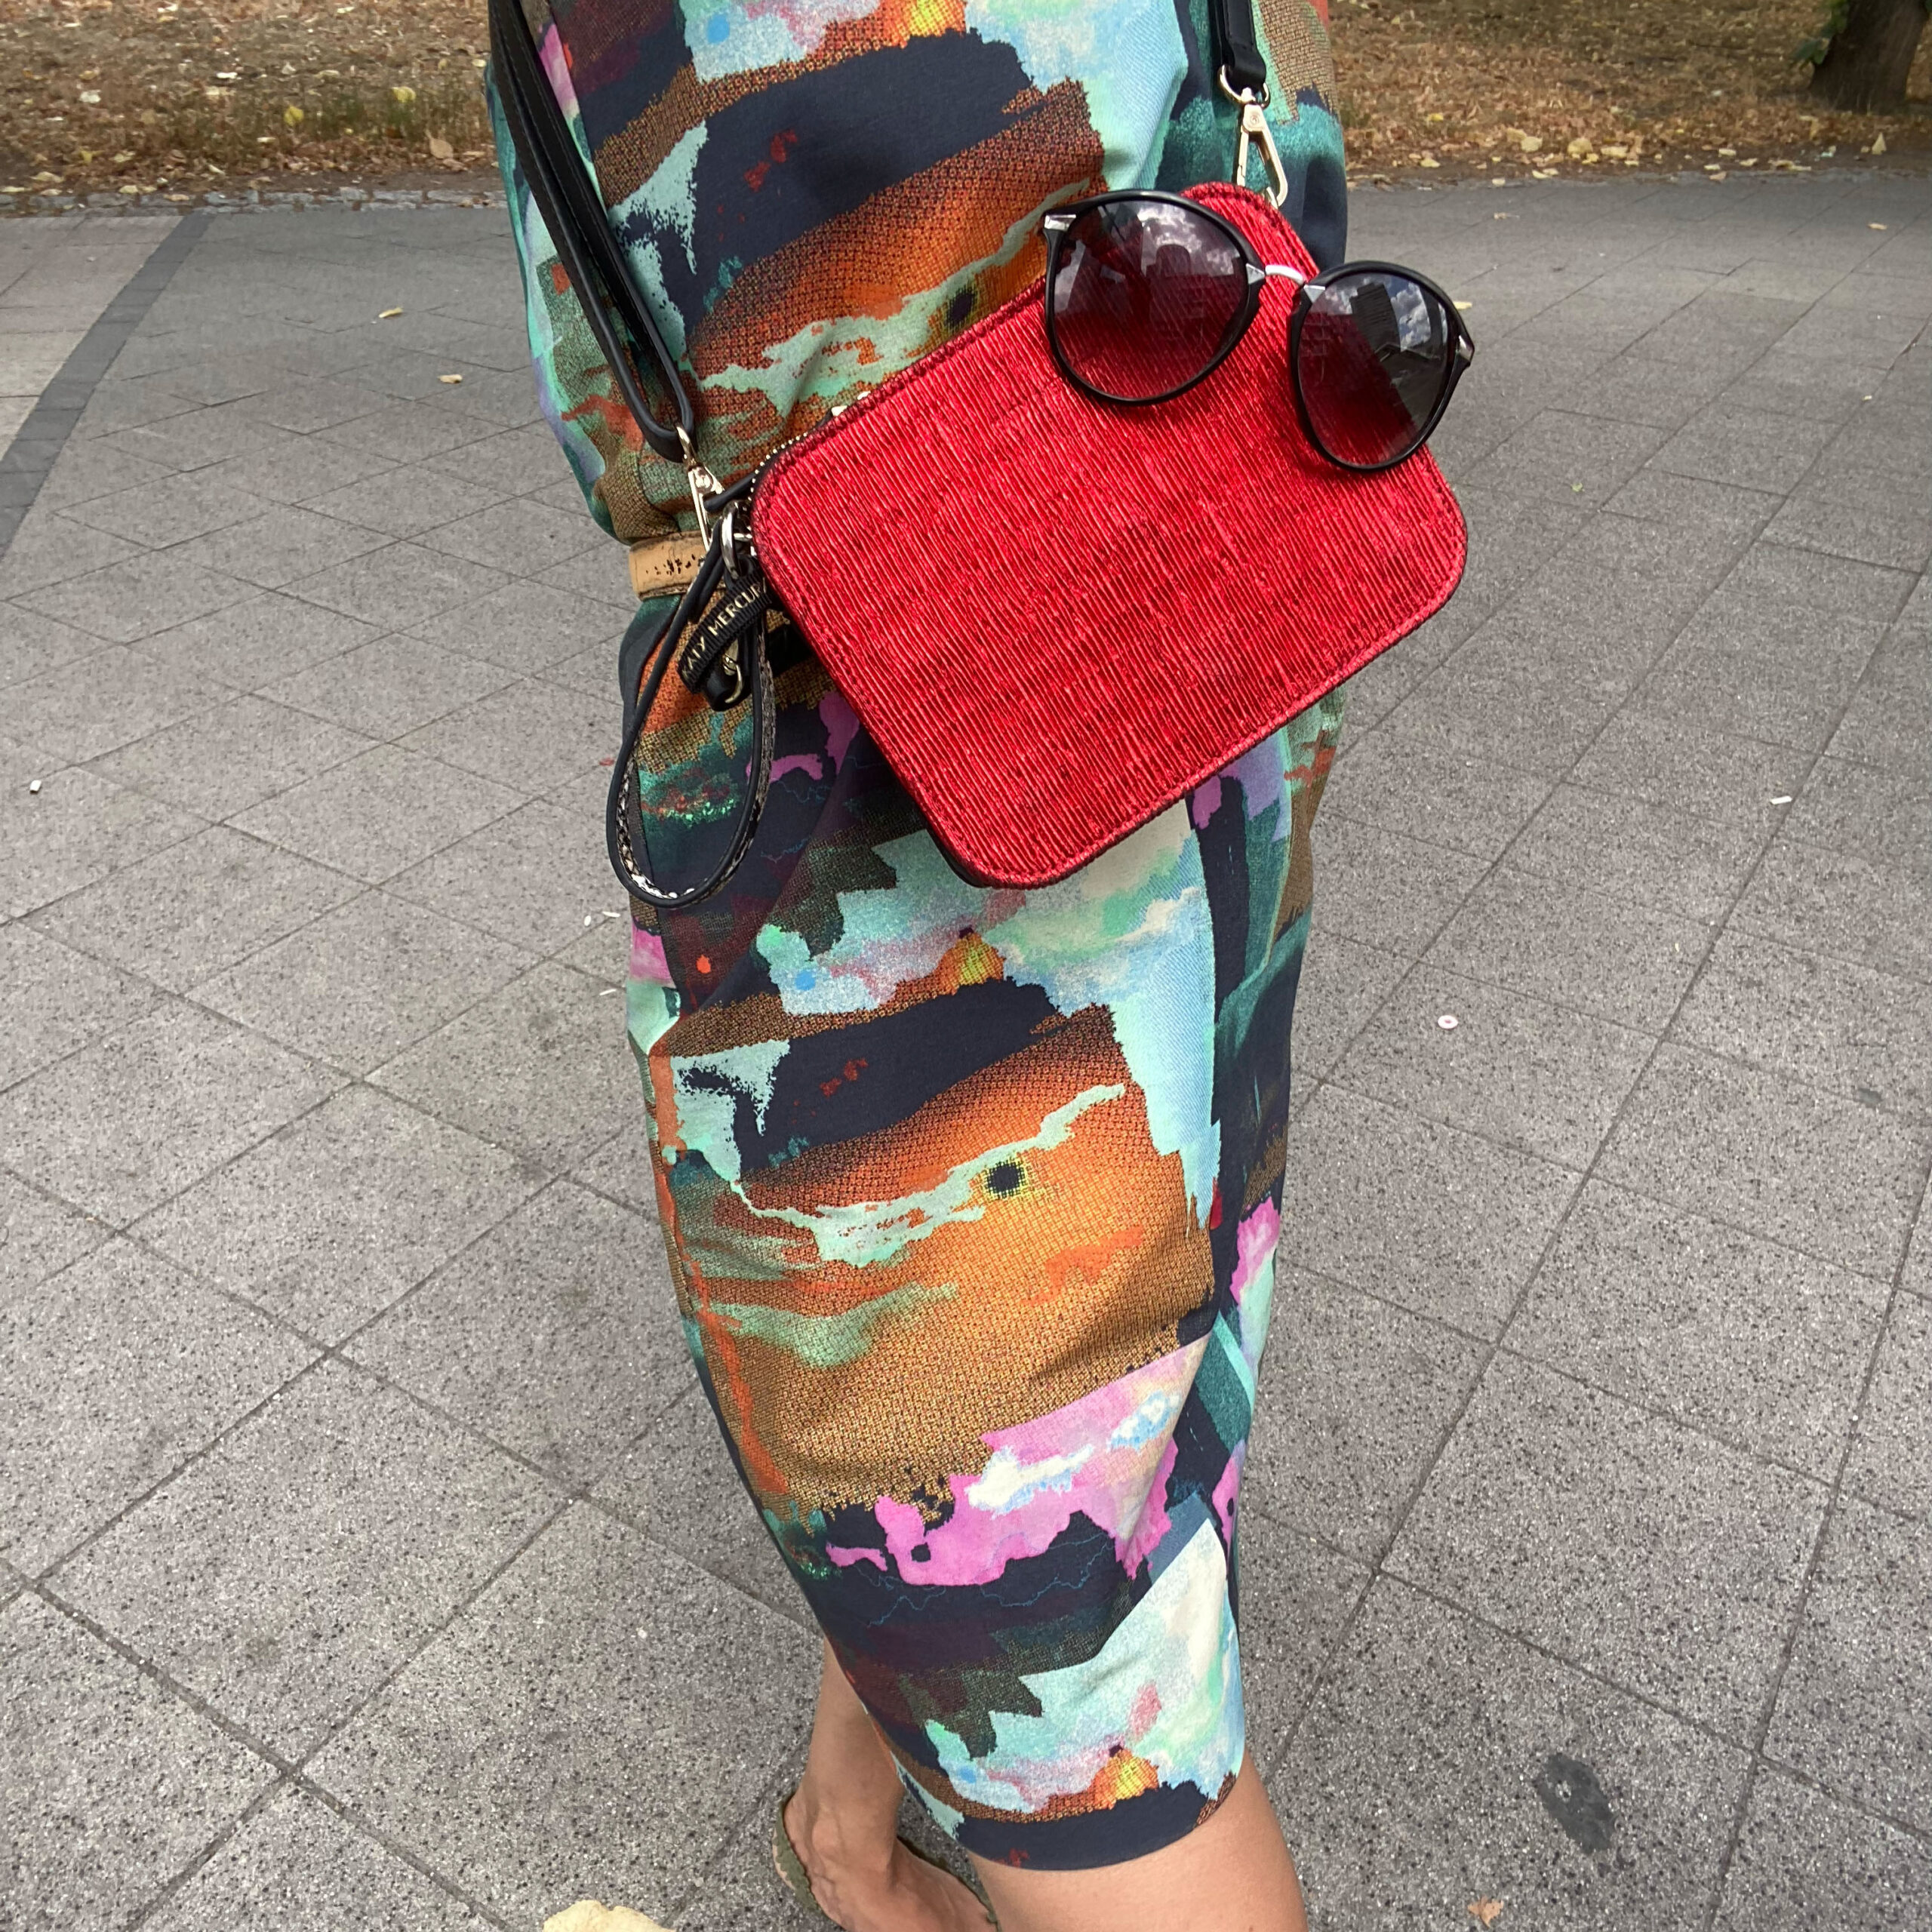 Katy Mercury Bag#1 mit StyleCOVER Wechselklappe Rot Hochzeitsgast Outfit Sommerkleid Tasche